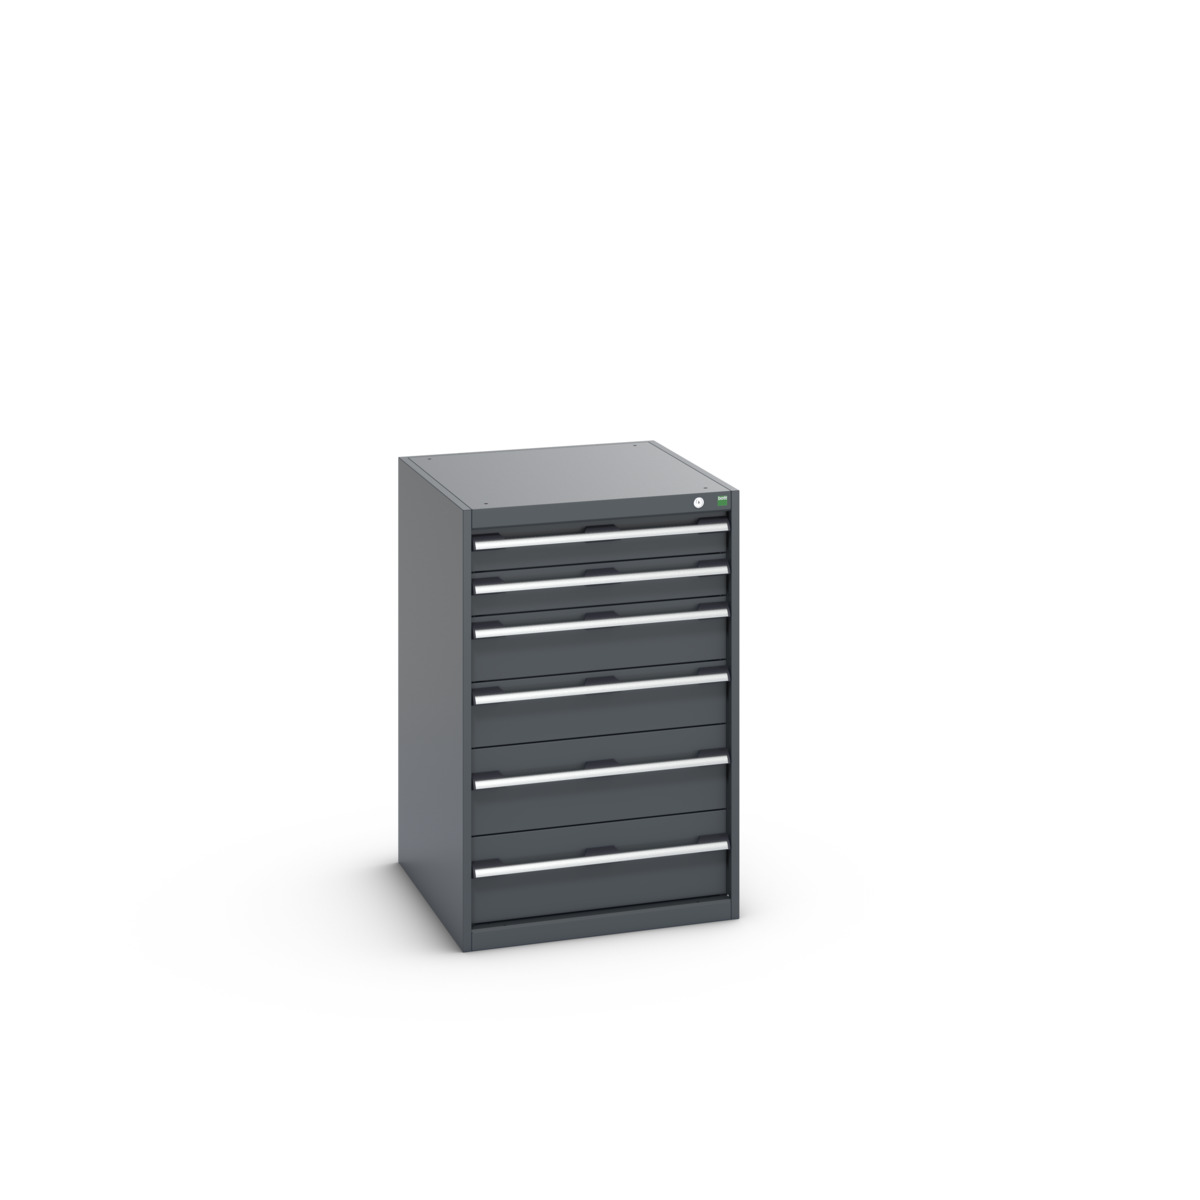 40027027.77V - cubio drawer cabinet